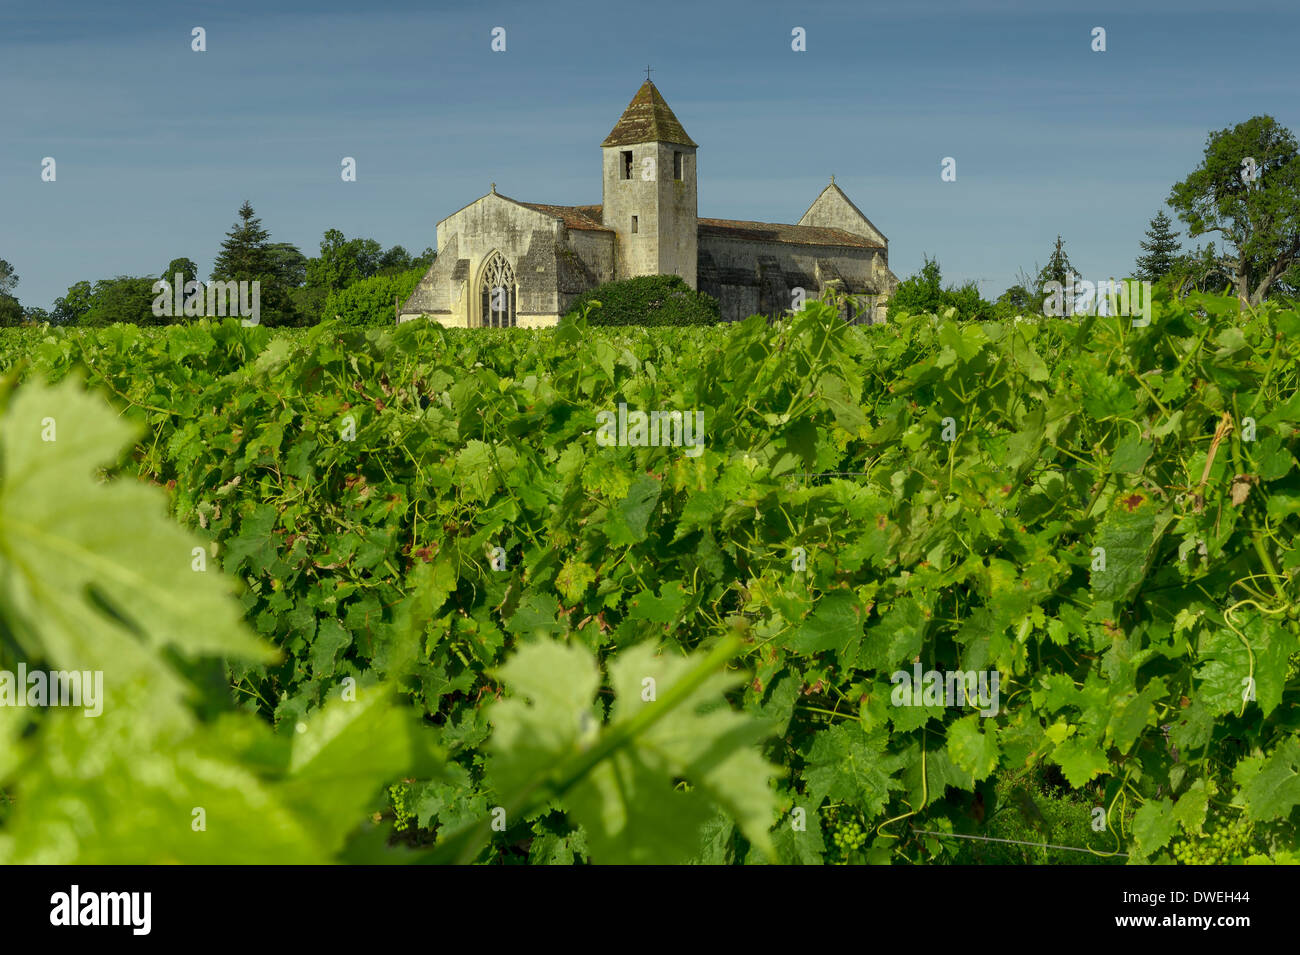 Chiesa di Agudelle vicino a vigneti, Haute-Saintonge, Charente-Maritime, Francia Foto Stock